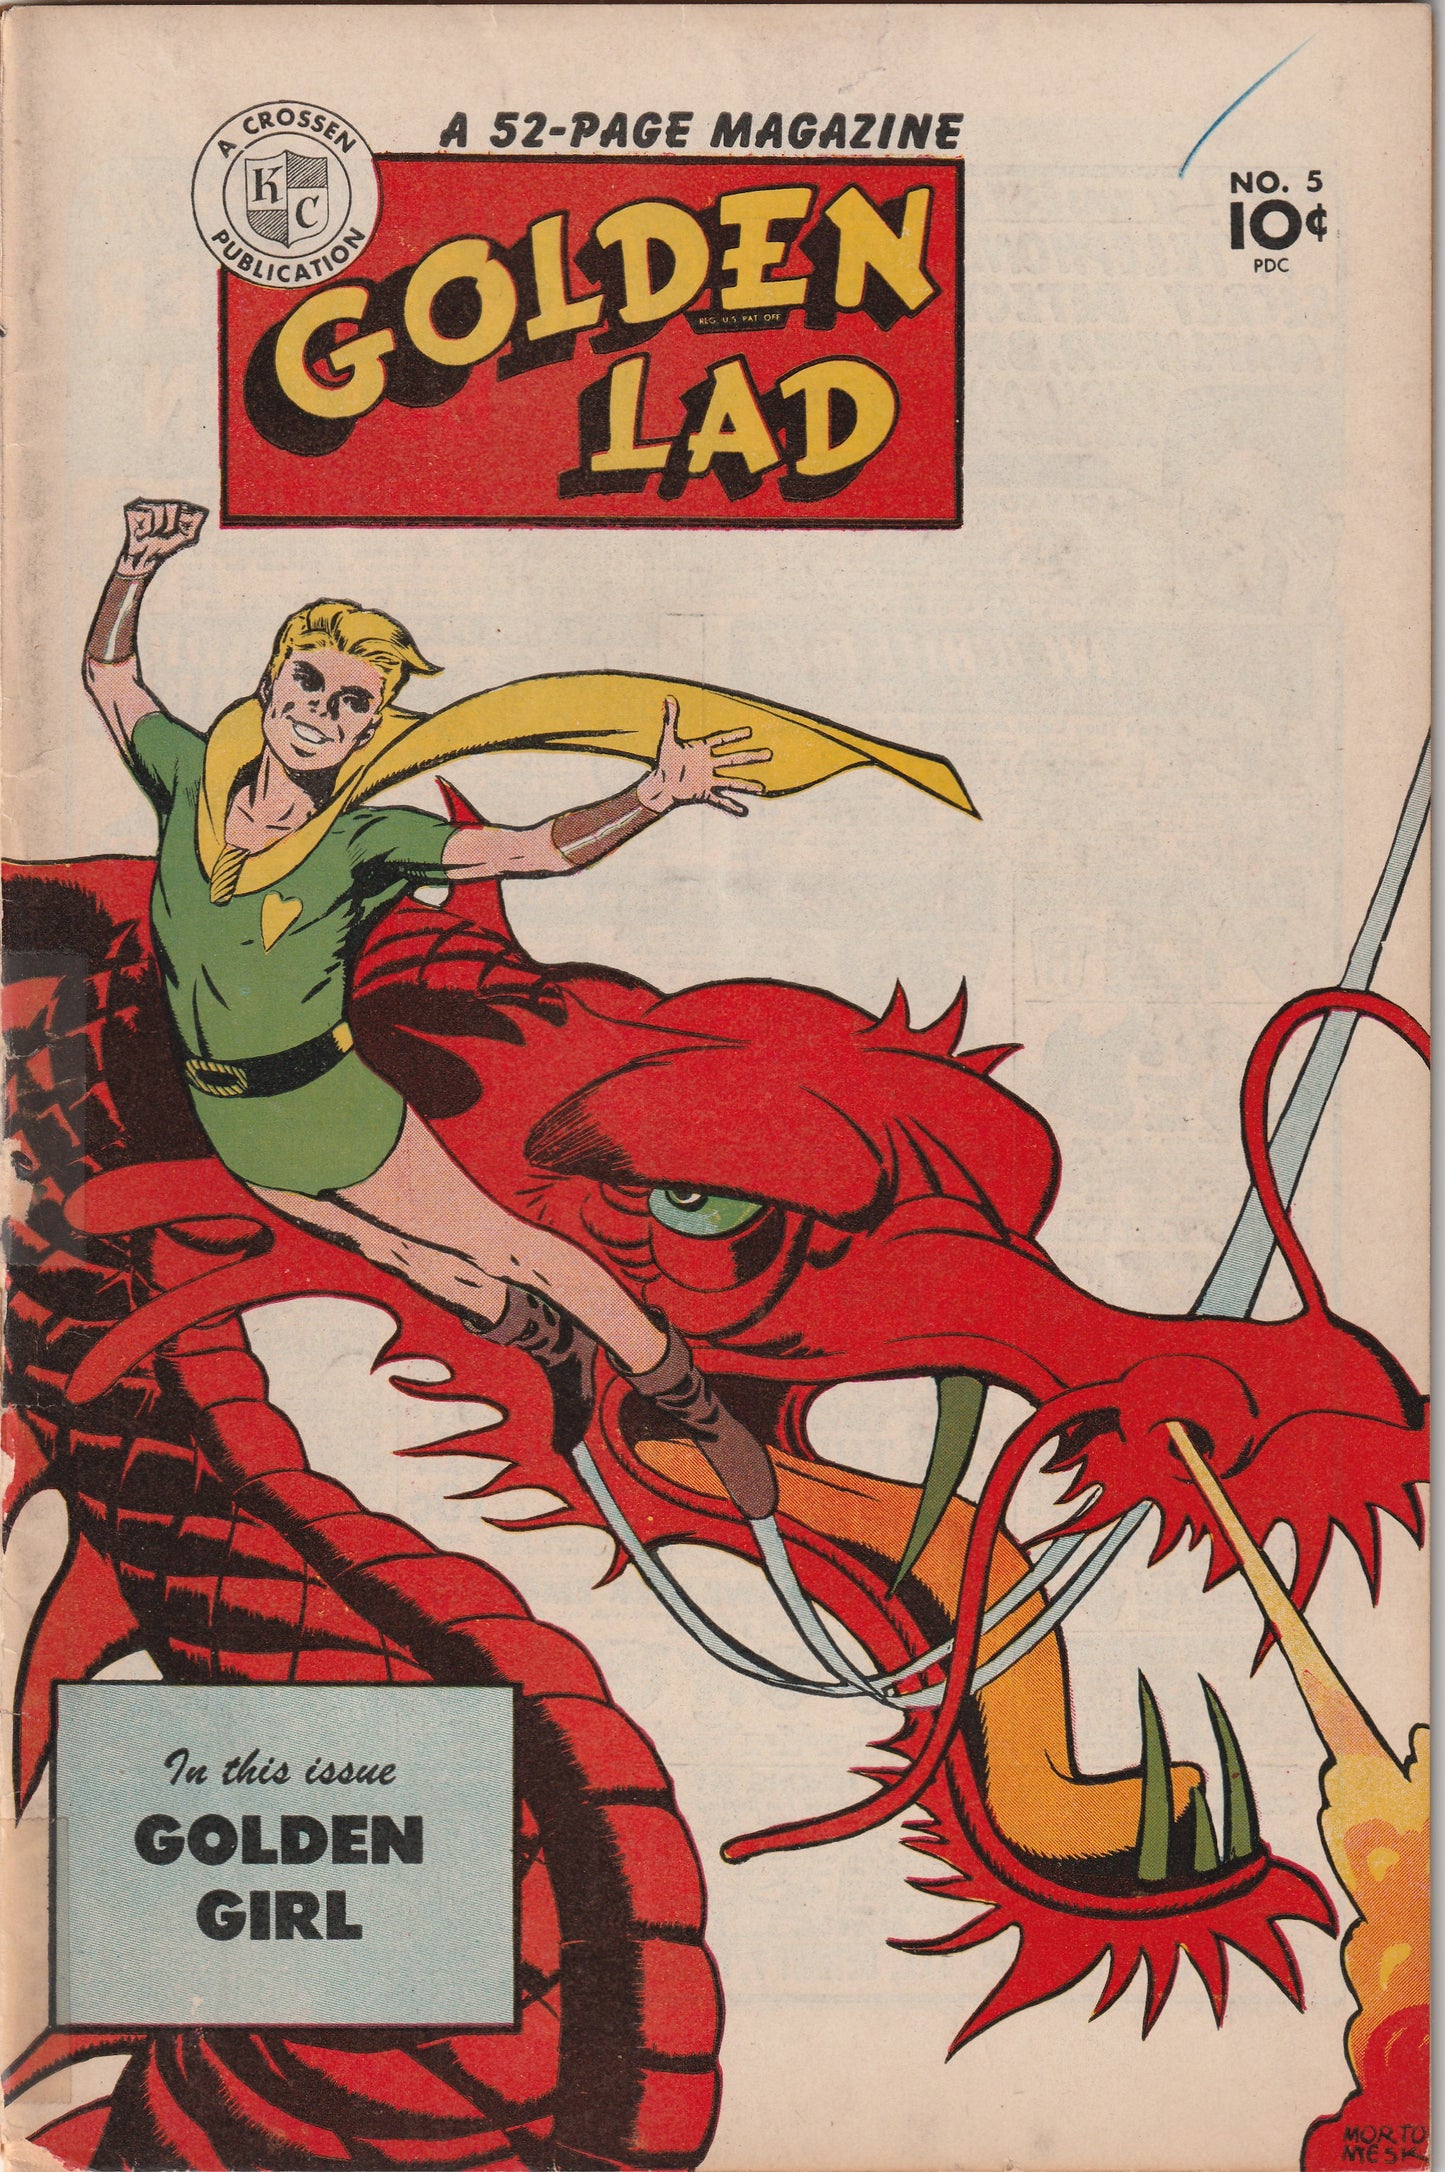 Golden Lad #5 (1946) - Origin & 1st Appearance Golden Girl, Mort Meskin cover